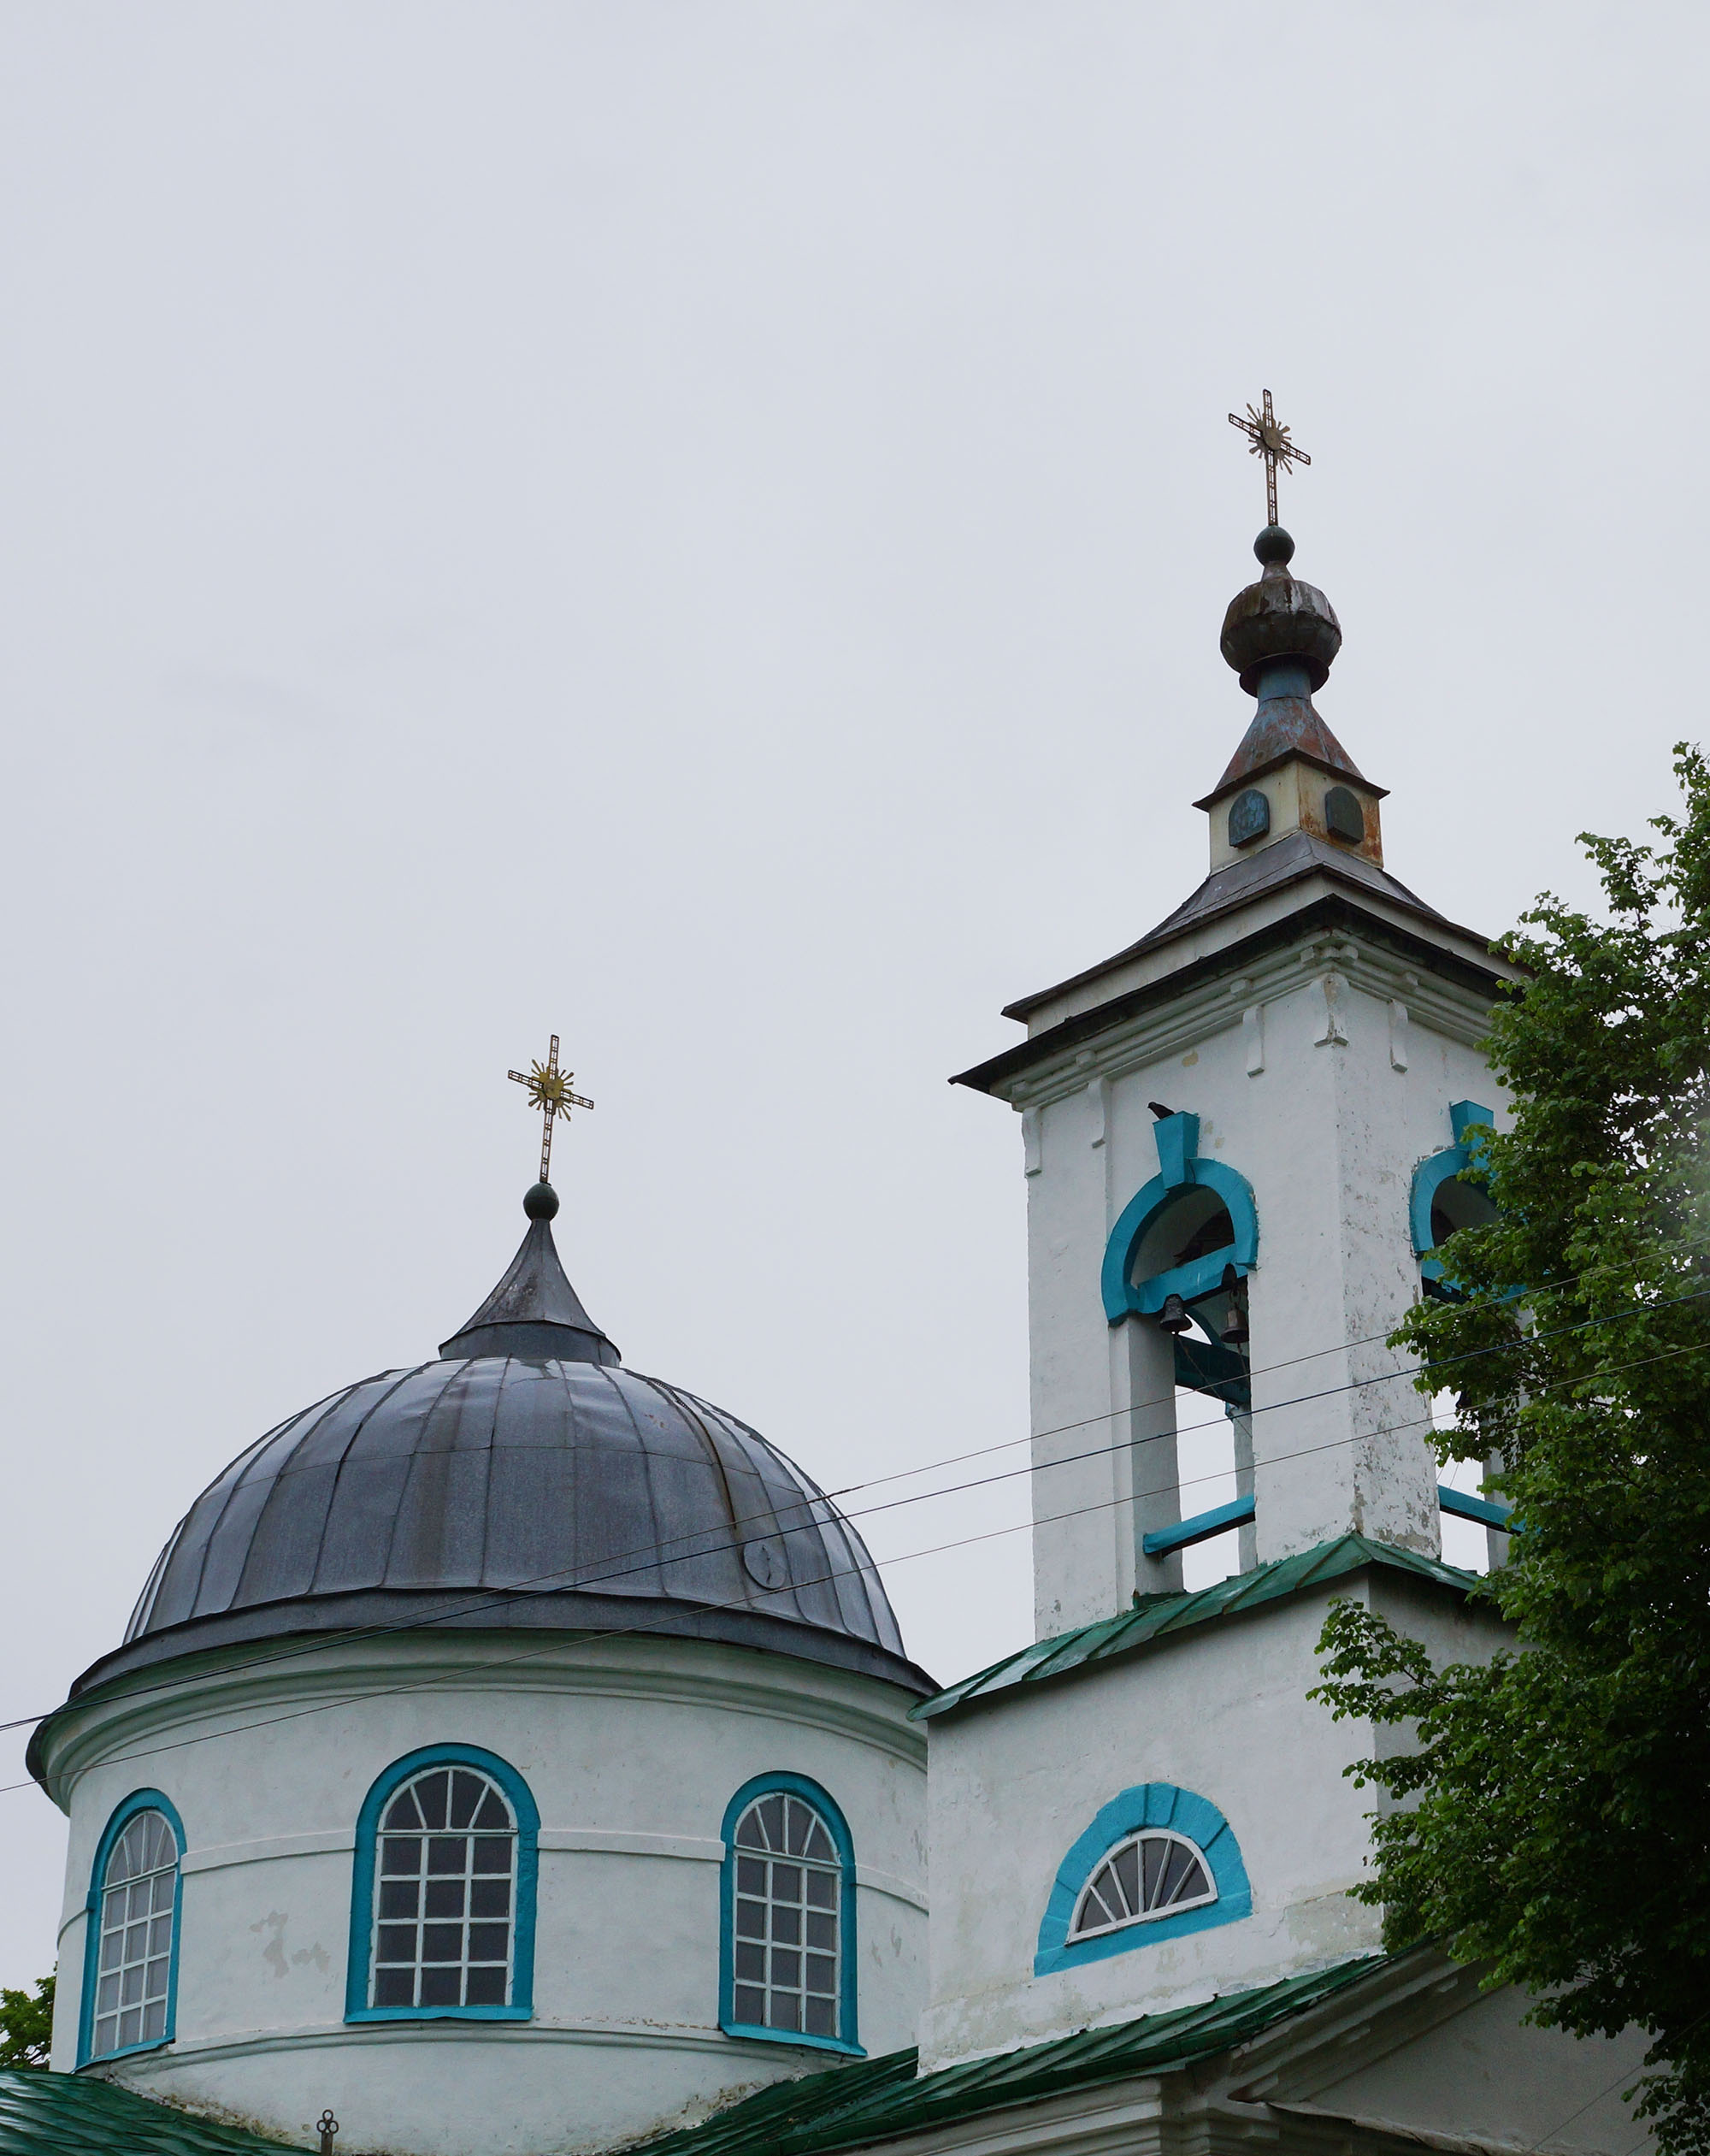 Болчино, Дедовичский район, Псковская область. Церковь Святой Живоначальной Троицы. 1828 год.